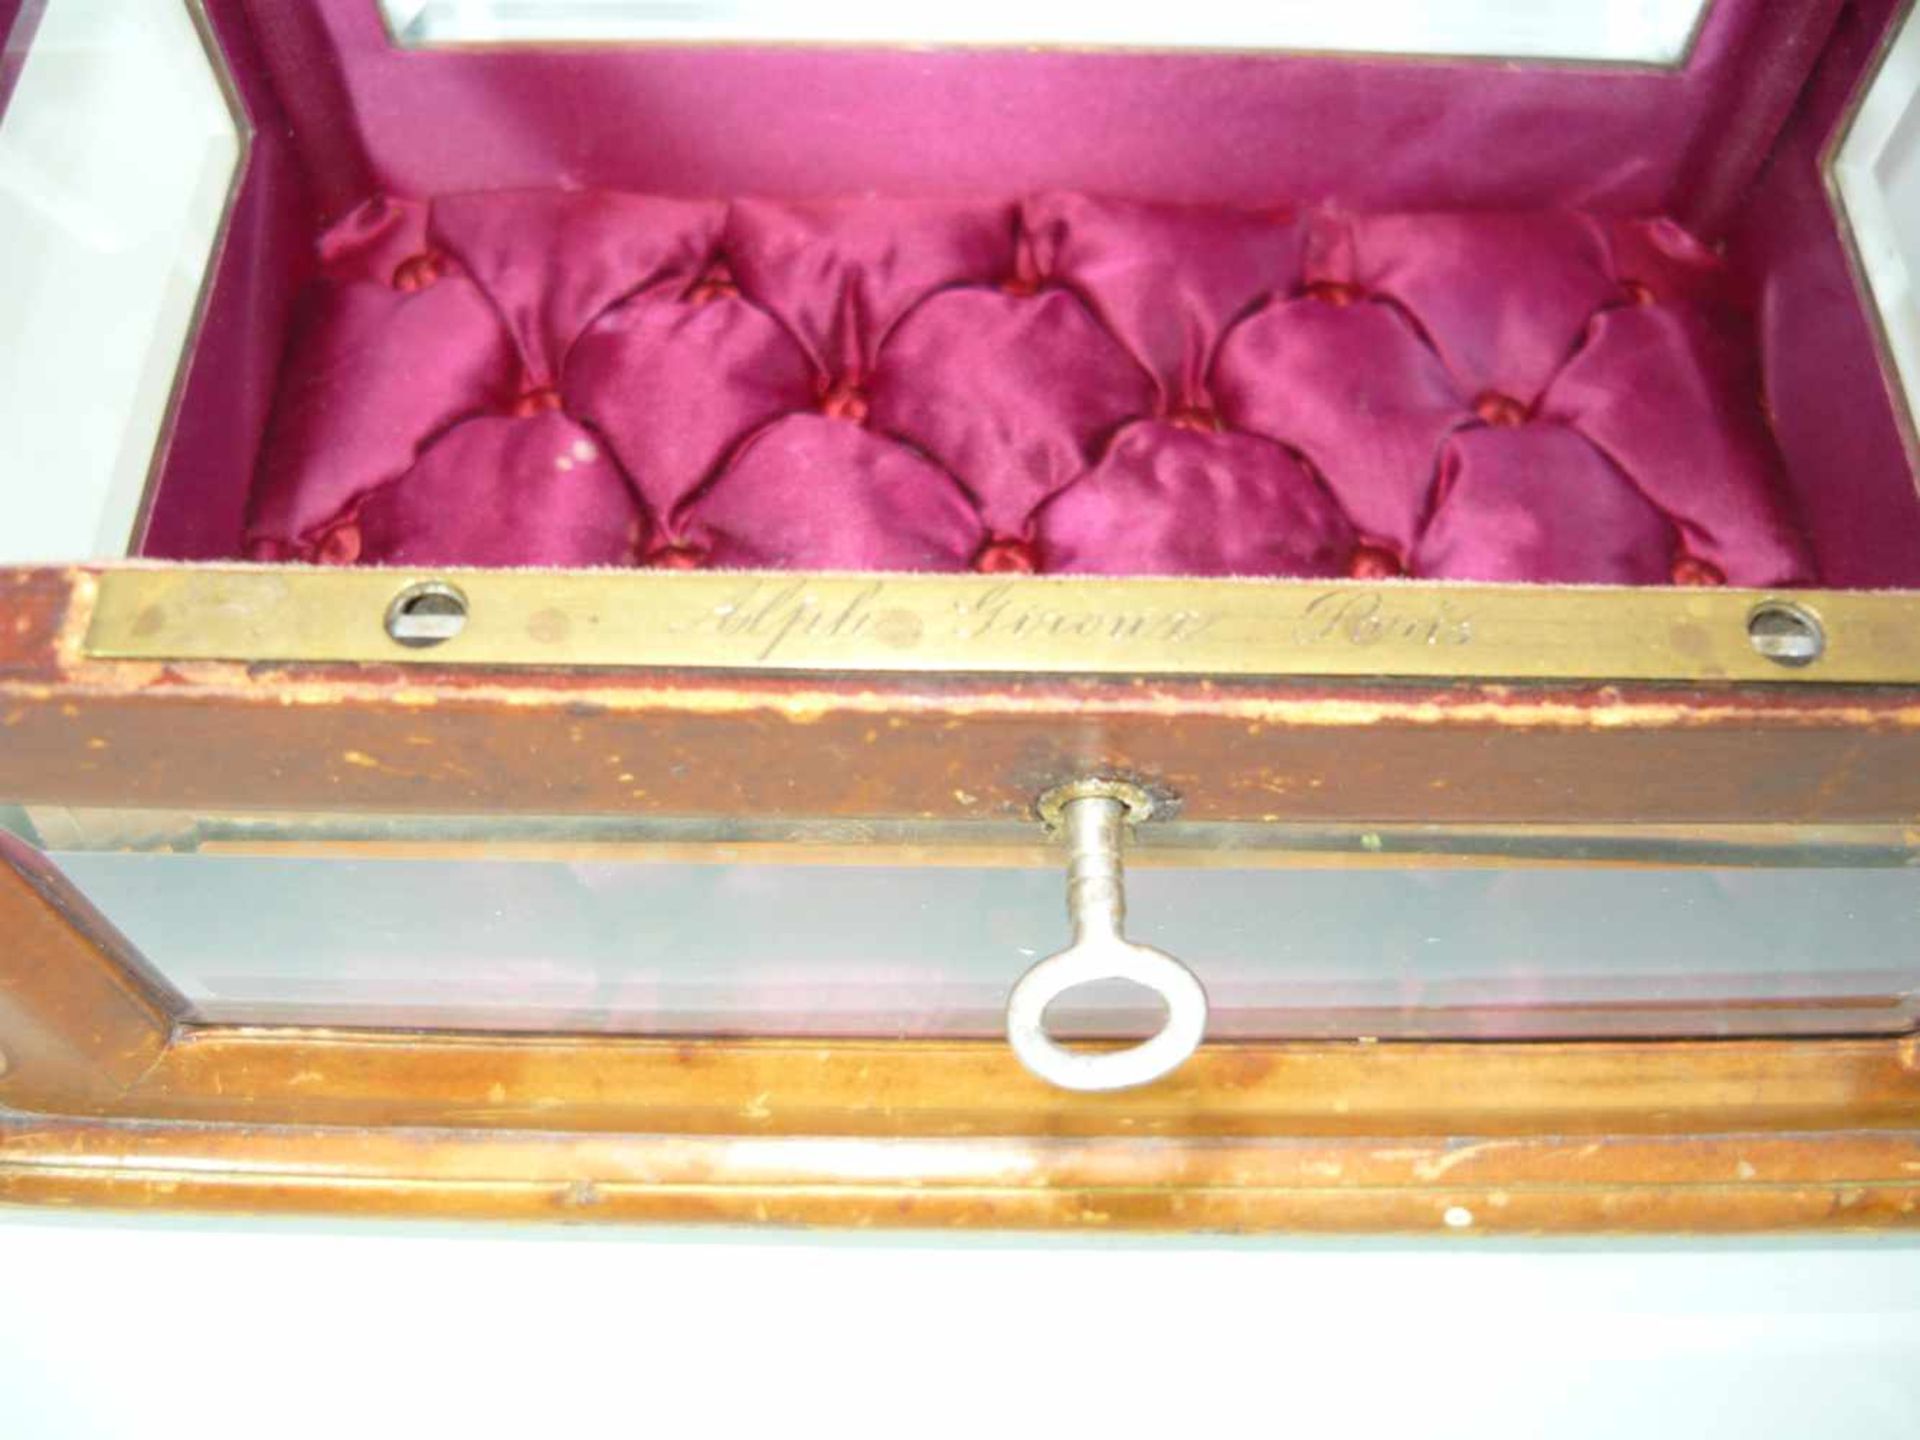 Alphonse Giroux, Paris. Seltene Schmuckschatulle. Wohl vor o. um 1900. Maß ca. 15x17x25 cm. - Bild 2 aus 3